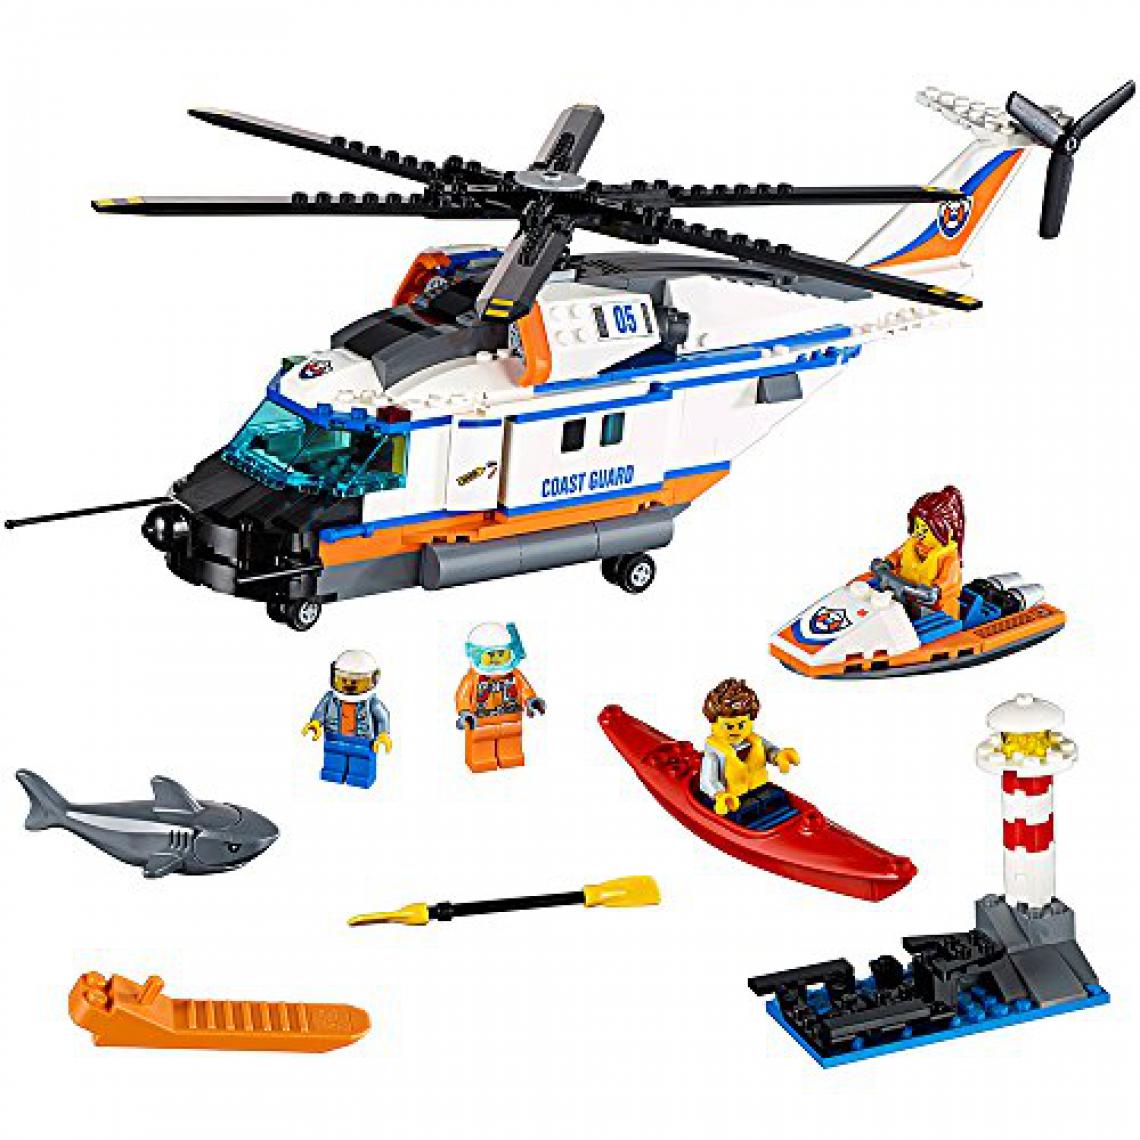 Lego - LEgO City Coast Guard Hélicoptère de sauvetage robuste 60166 Kit de construction (415 pièces) - Briques et blocs